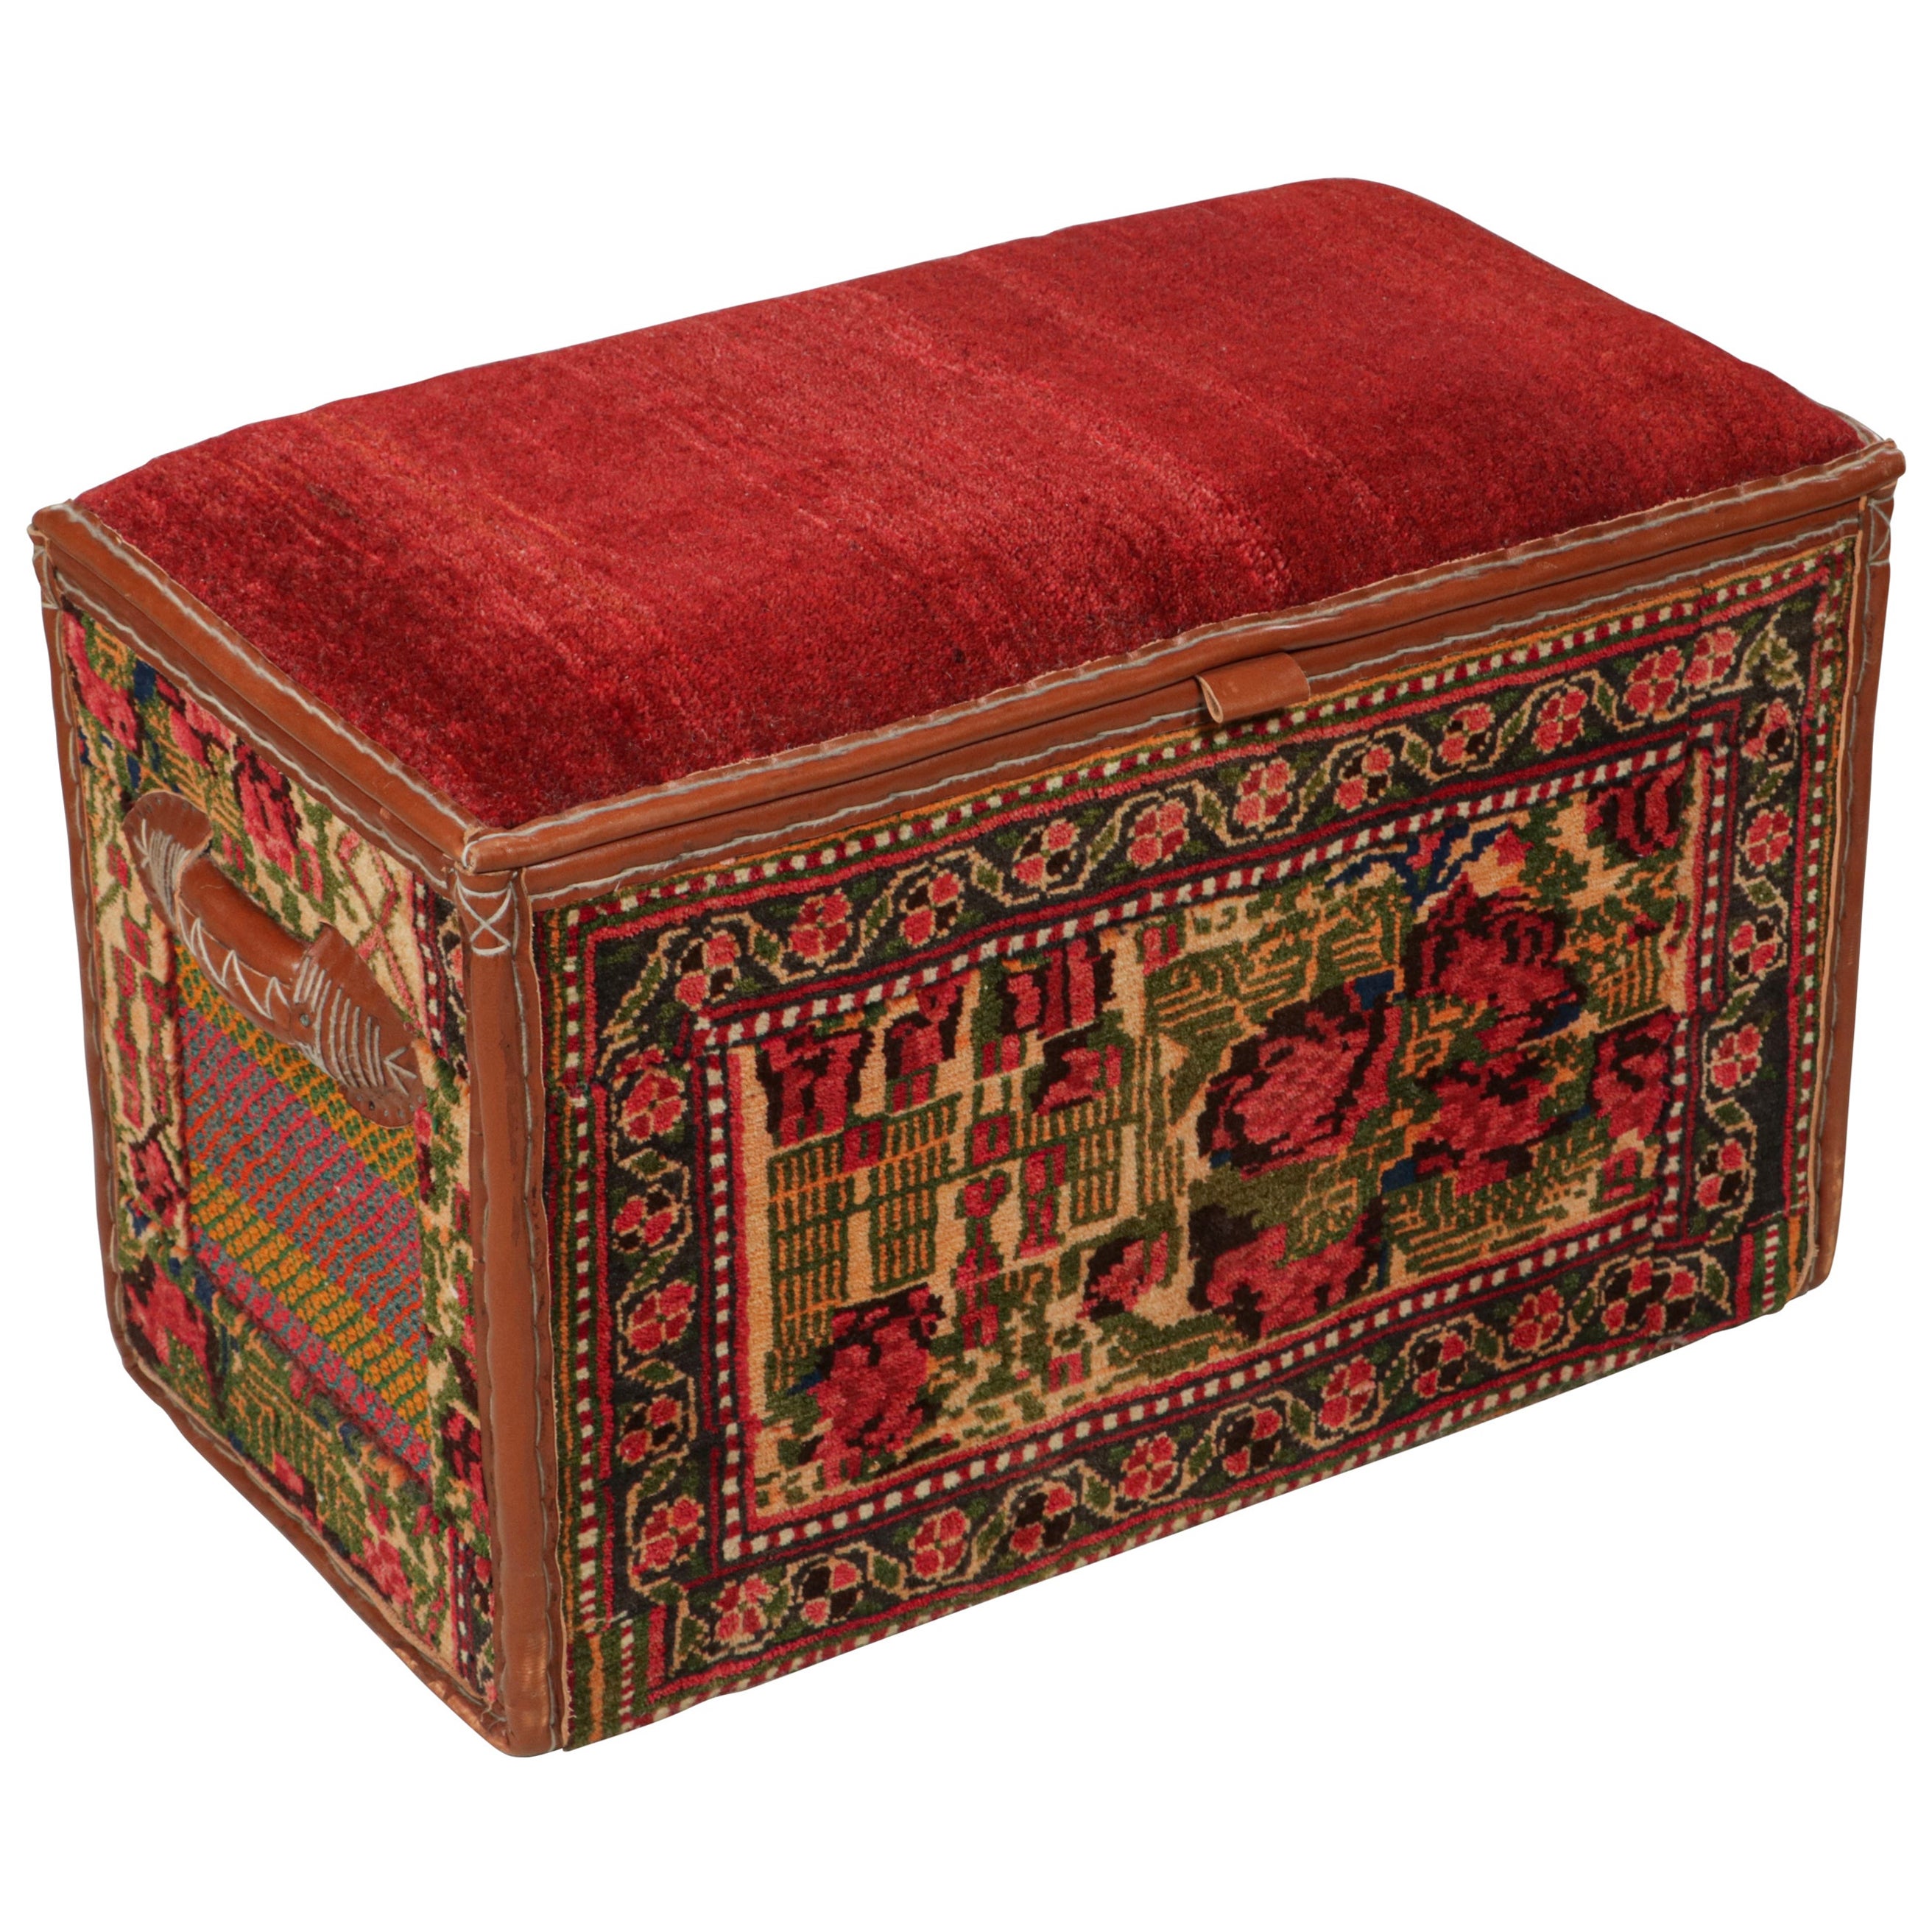 Rug & Kilim's Persian Tribal Storage Chest mit bunten geometrischen Mustern